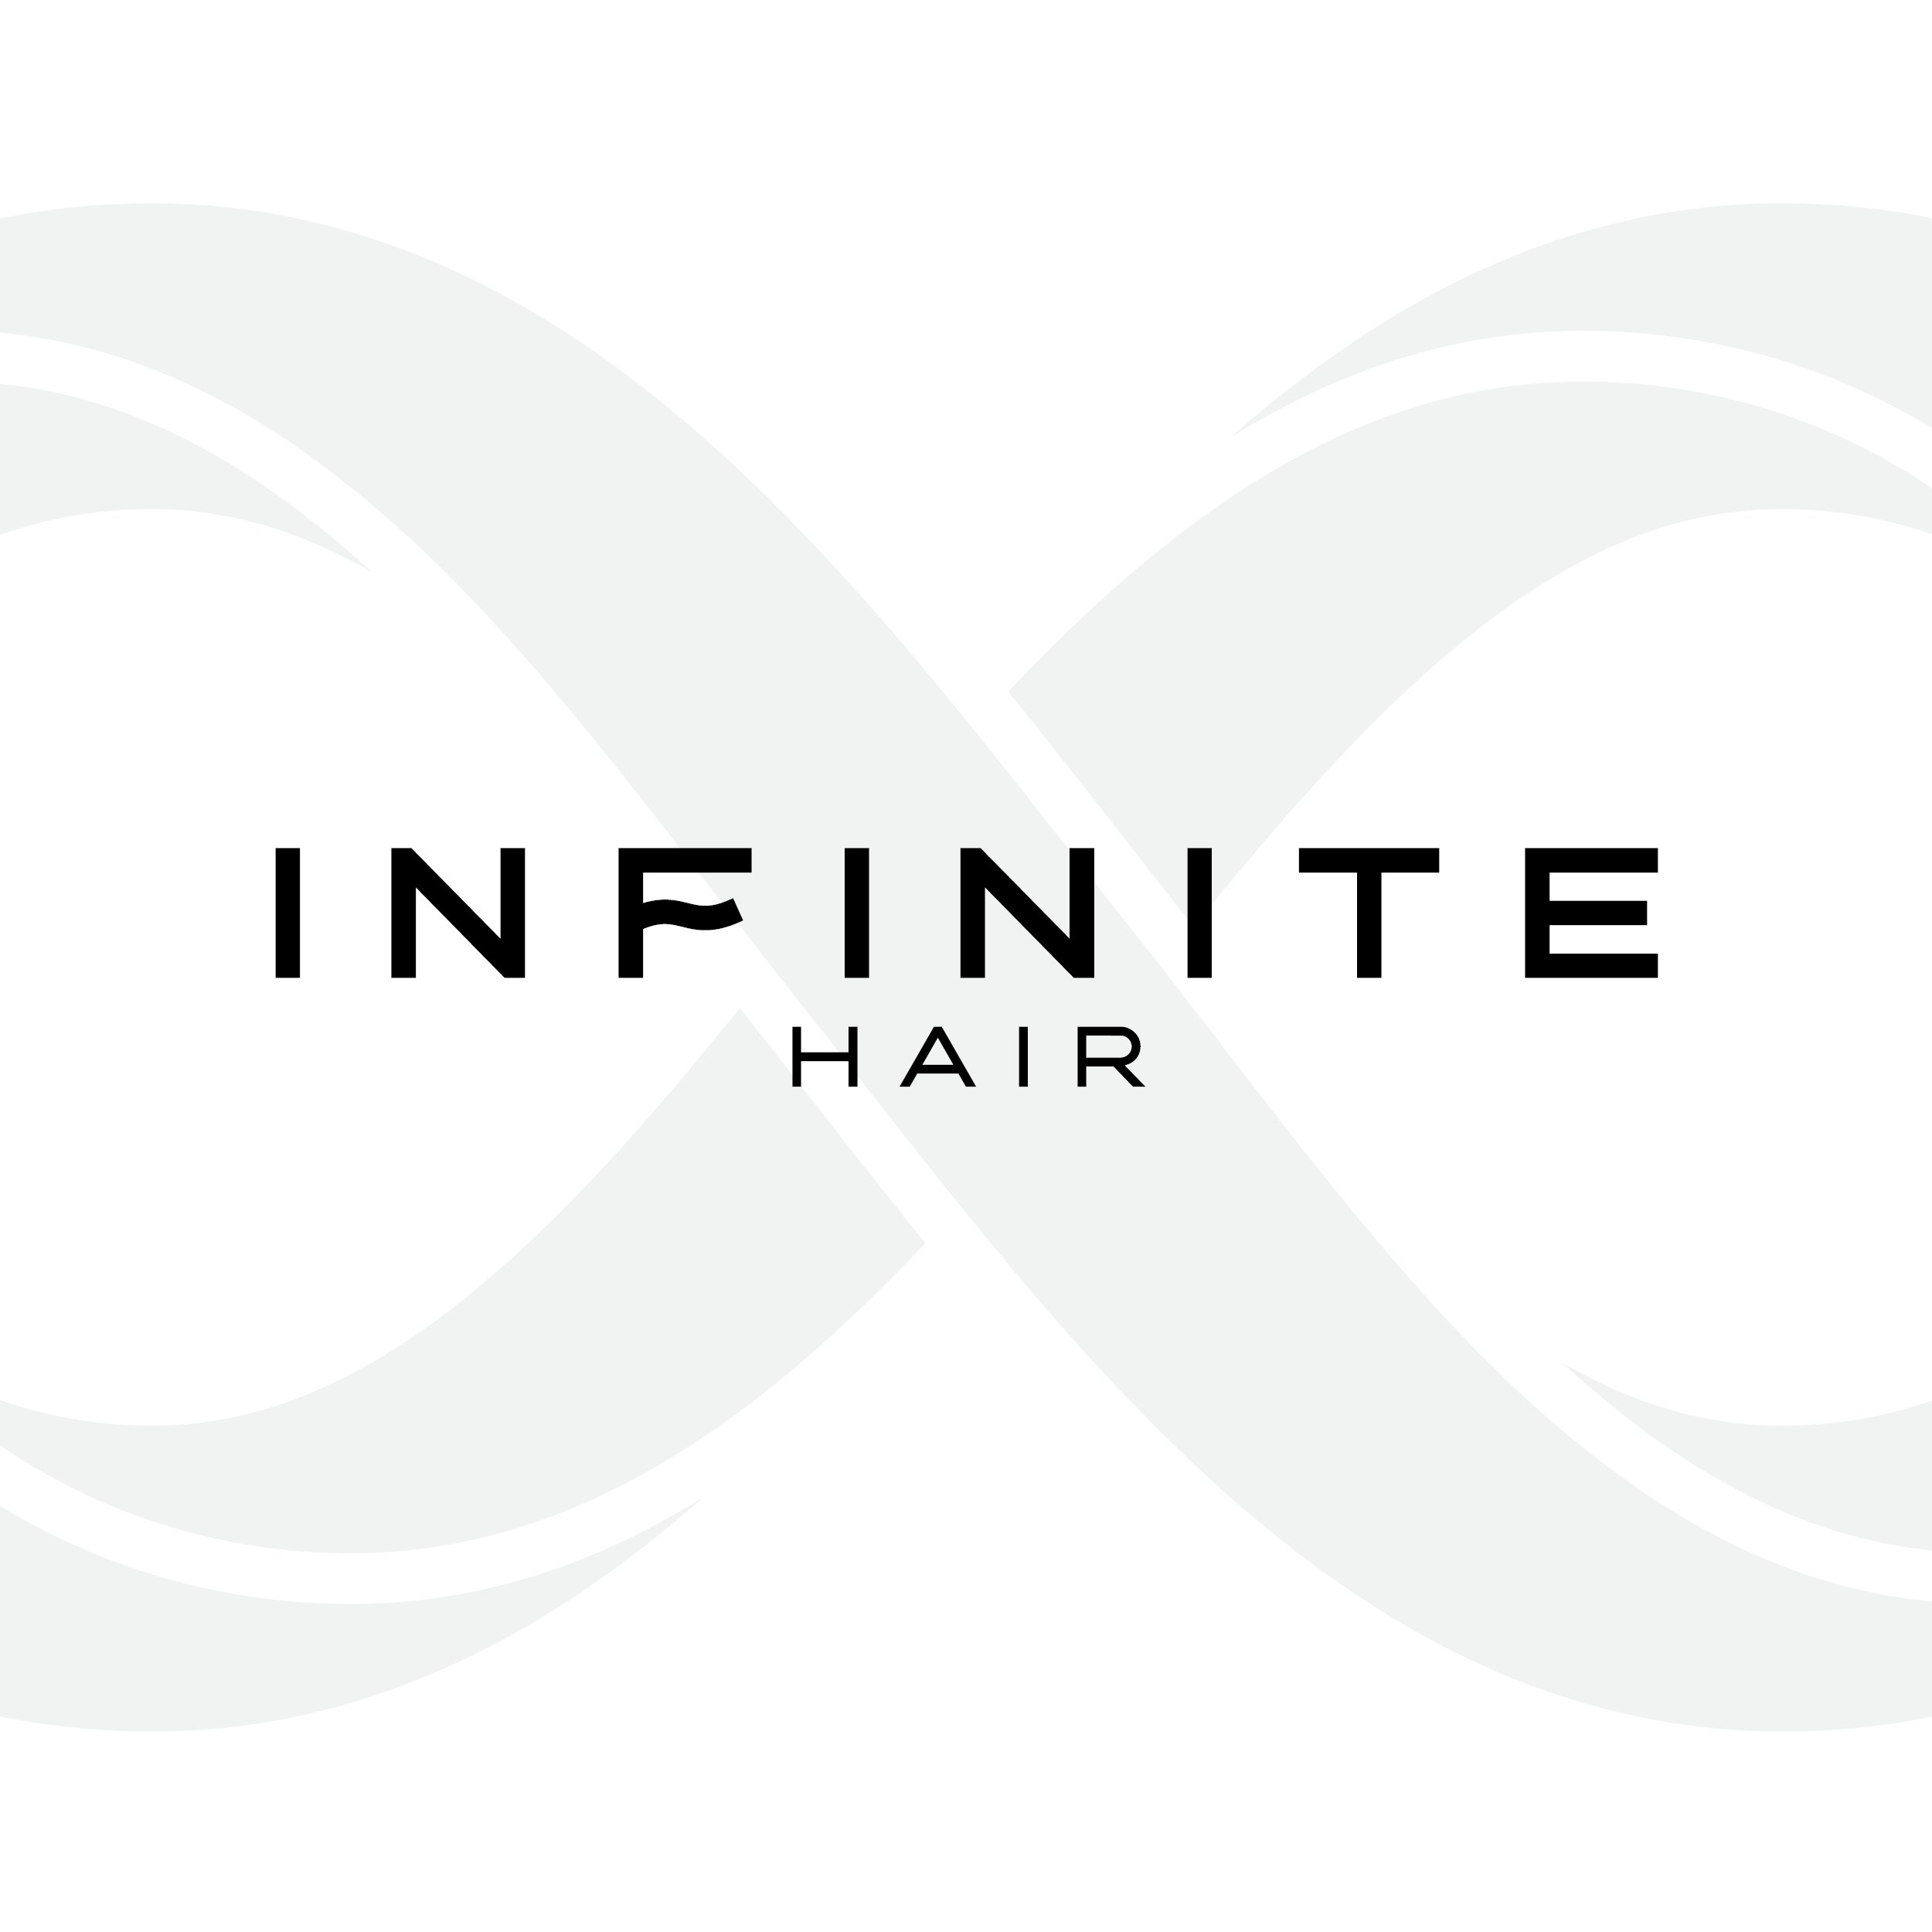 Infinite Hair - Social (logo).jpg